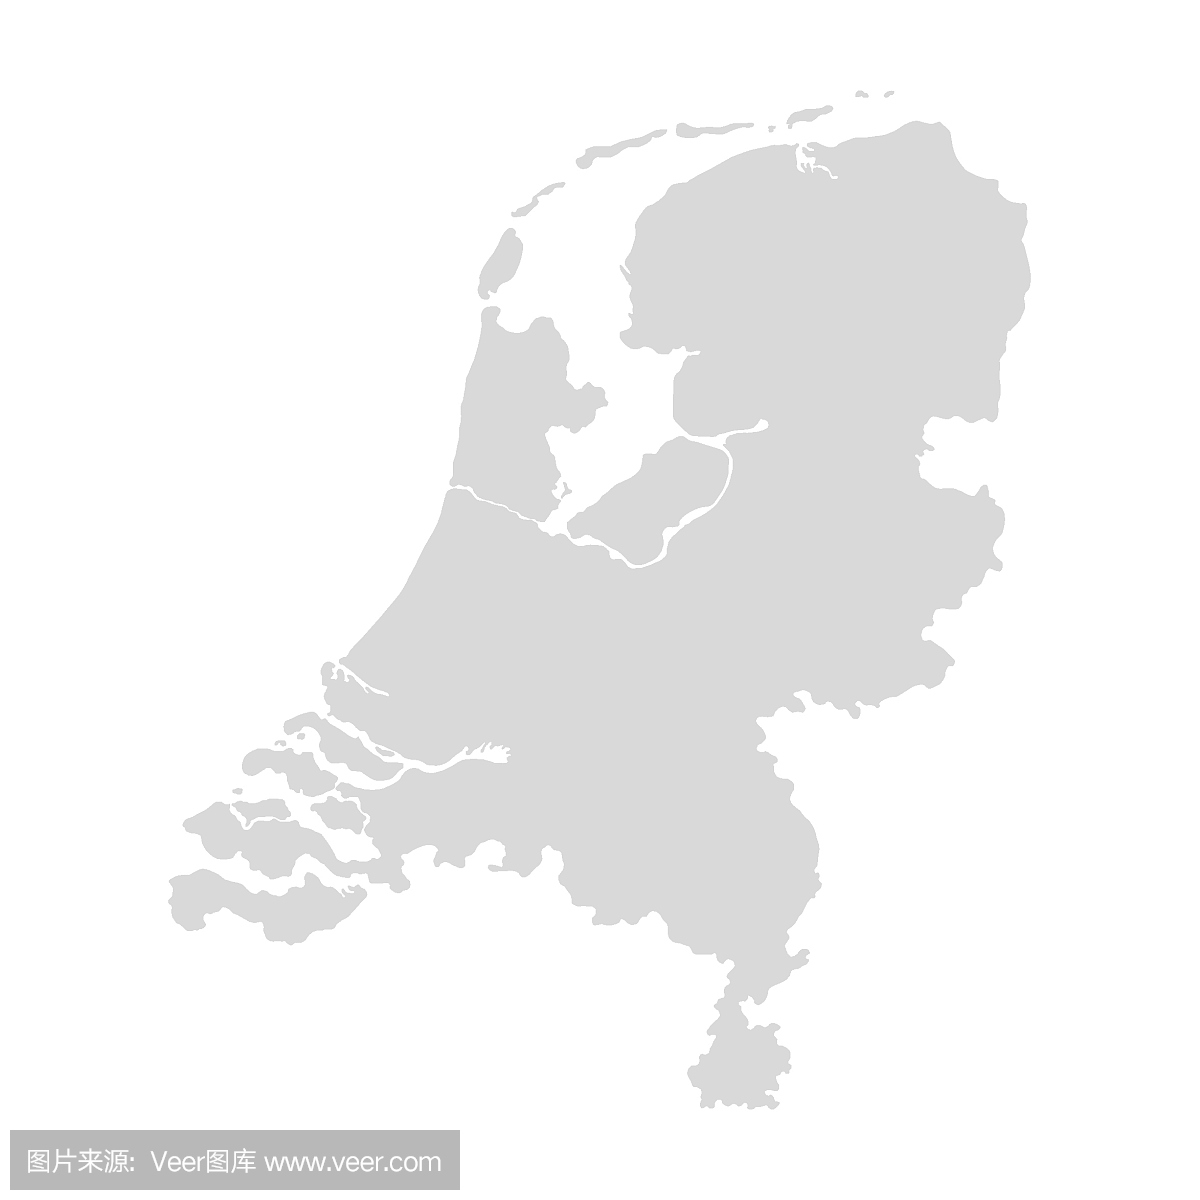 荷兰,荷兰的地图。向量